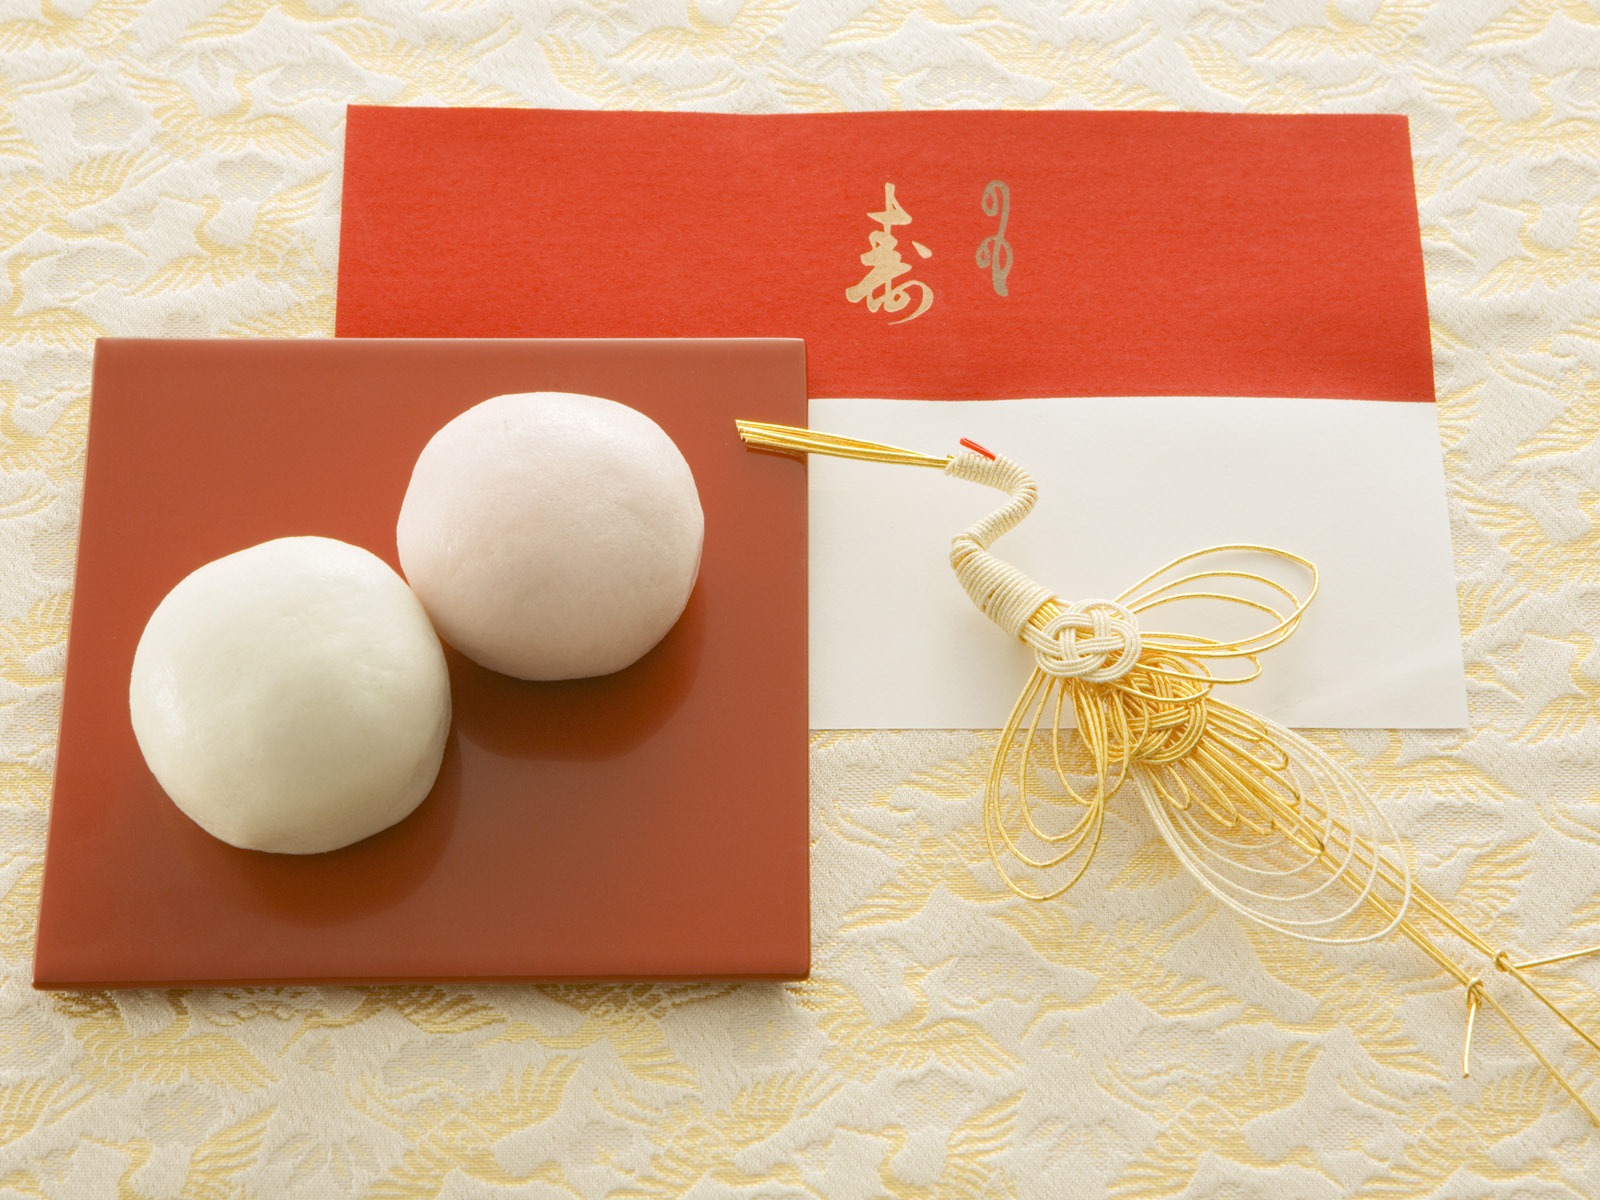 Fondos de año nuevo japonés Cultura (3) #13 - 1600x1200